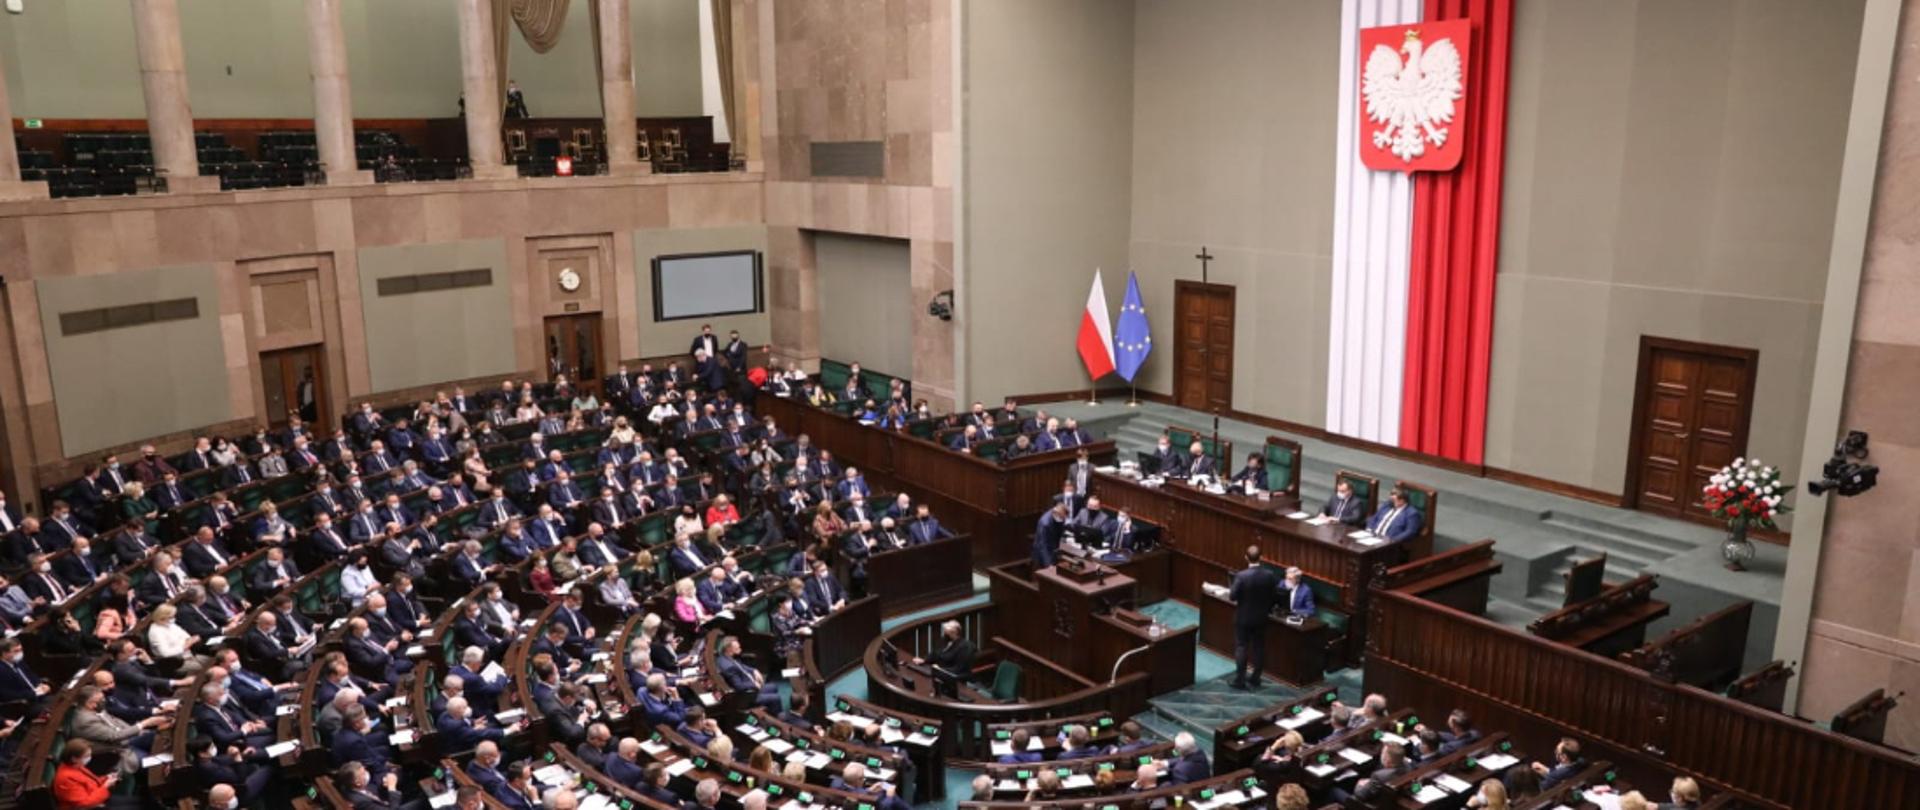 Zdjęcie sali plenarnej Sejmu